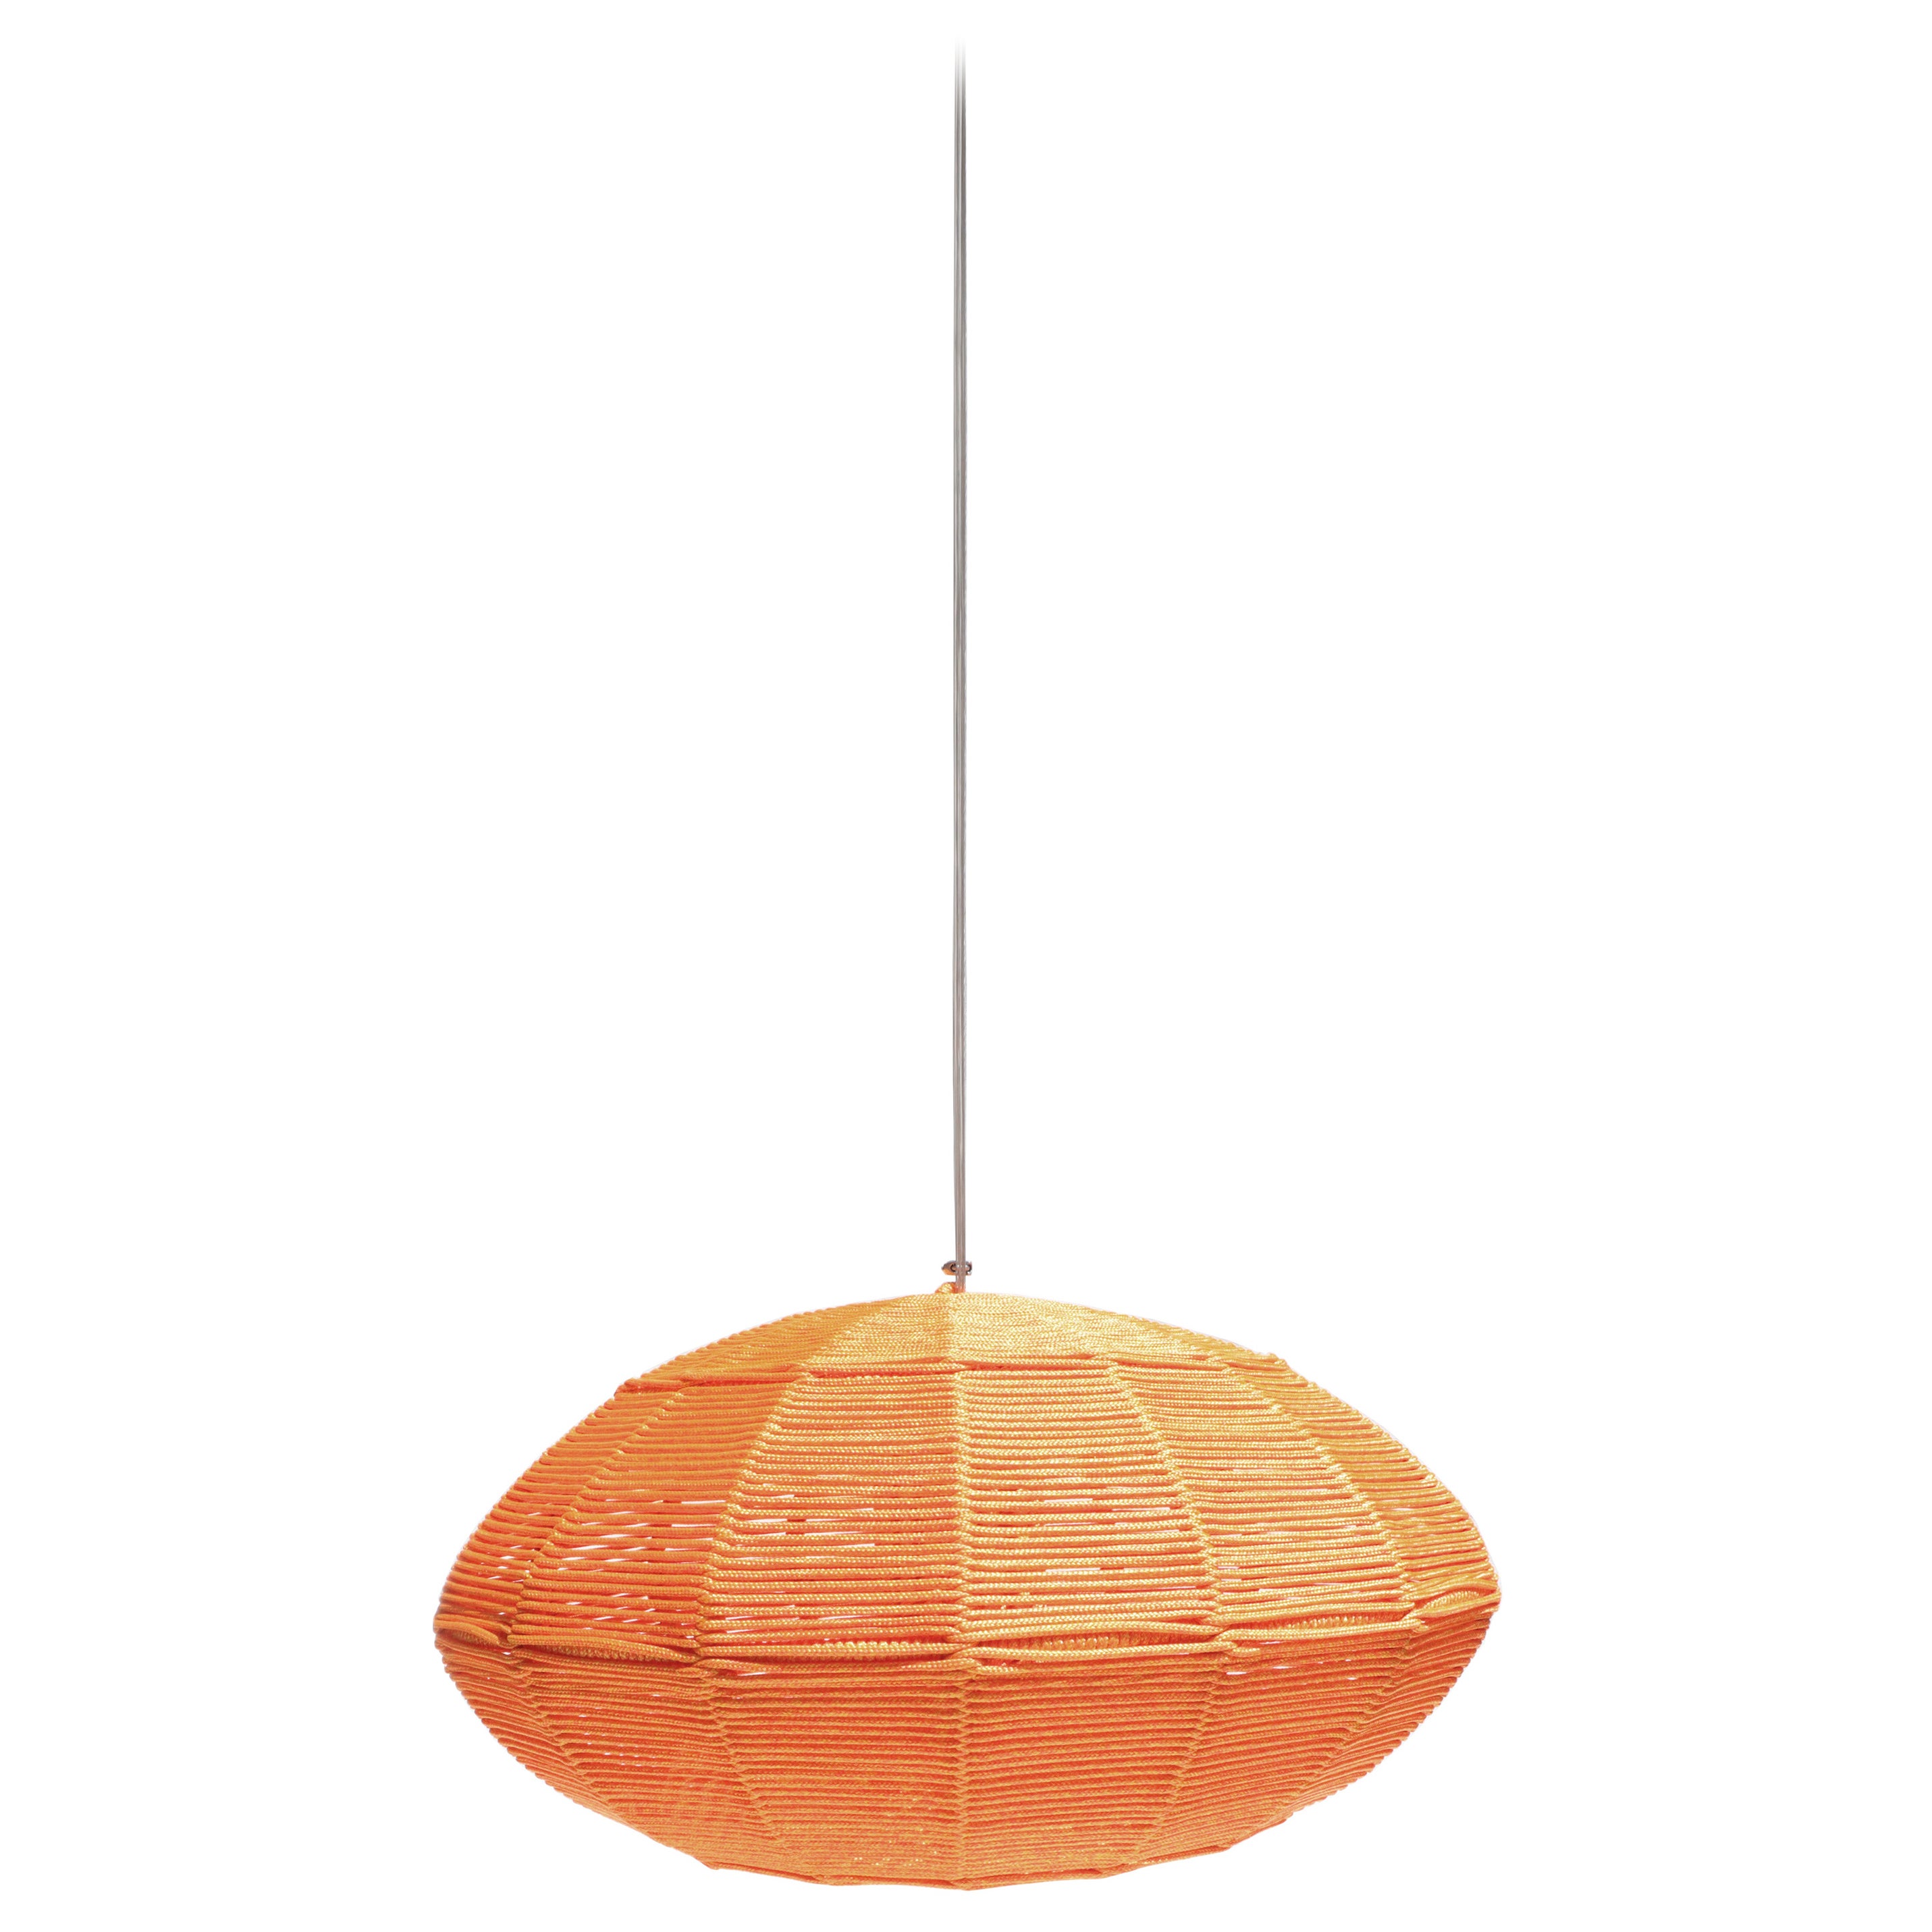 Catolé lamp (60 cm Ø) - In Orange For Sale